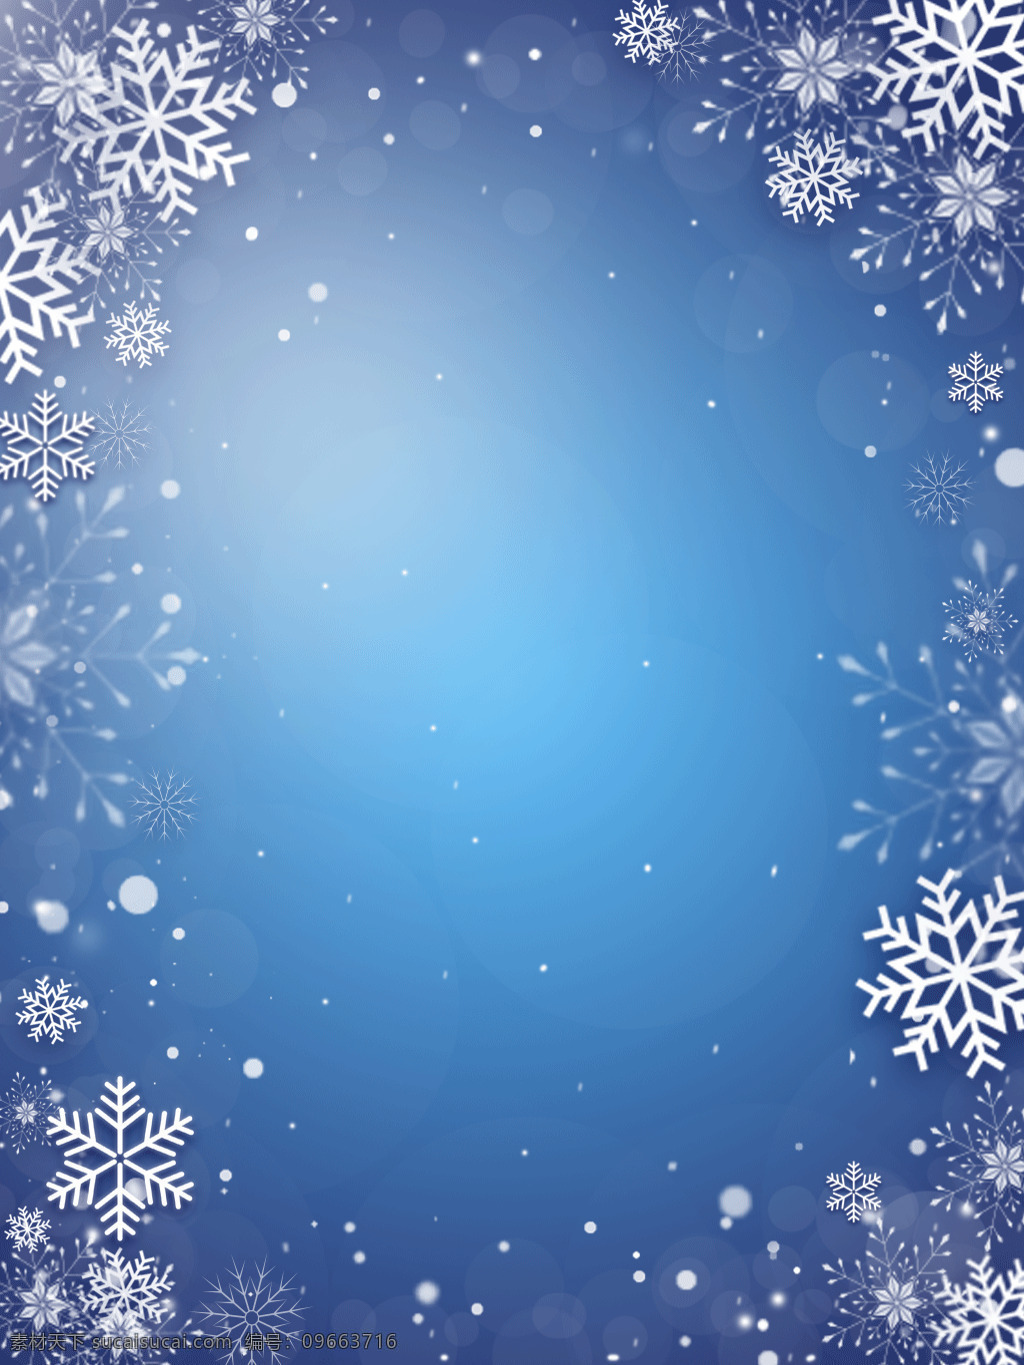 冬季 雪花 背景 素材图片 背景素材 高清 ps 海报背景